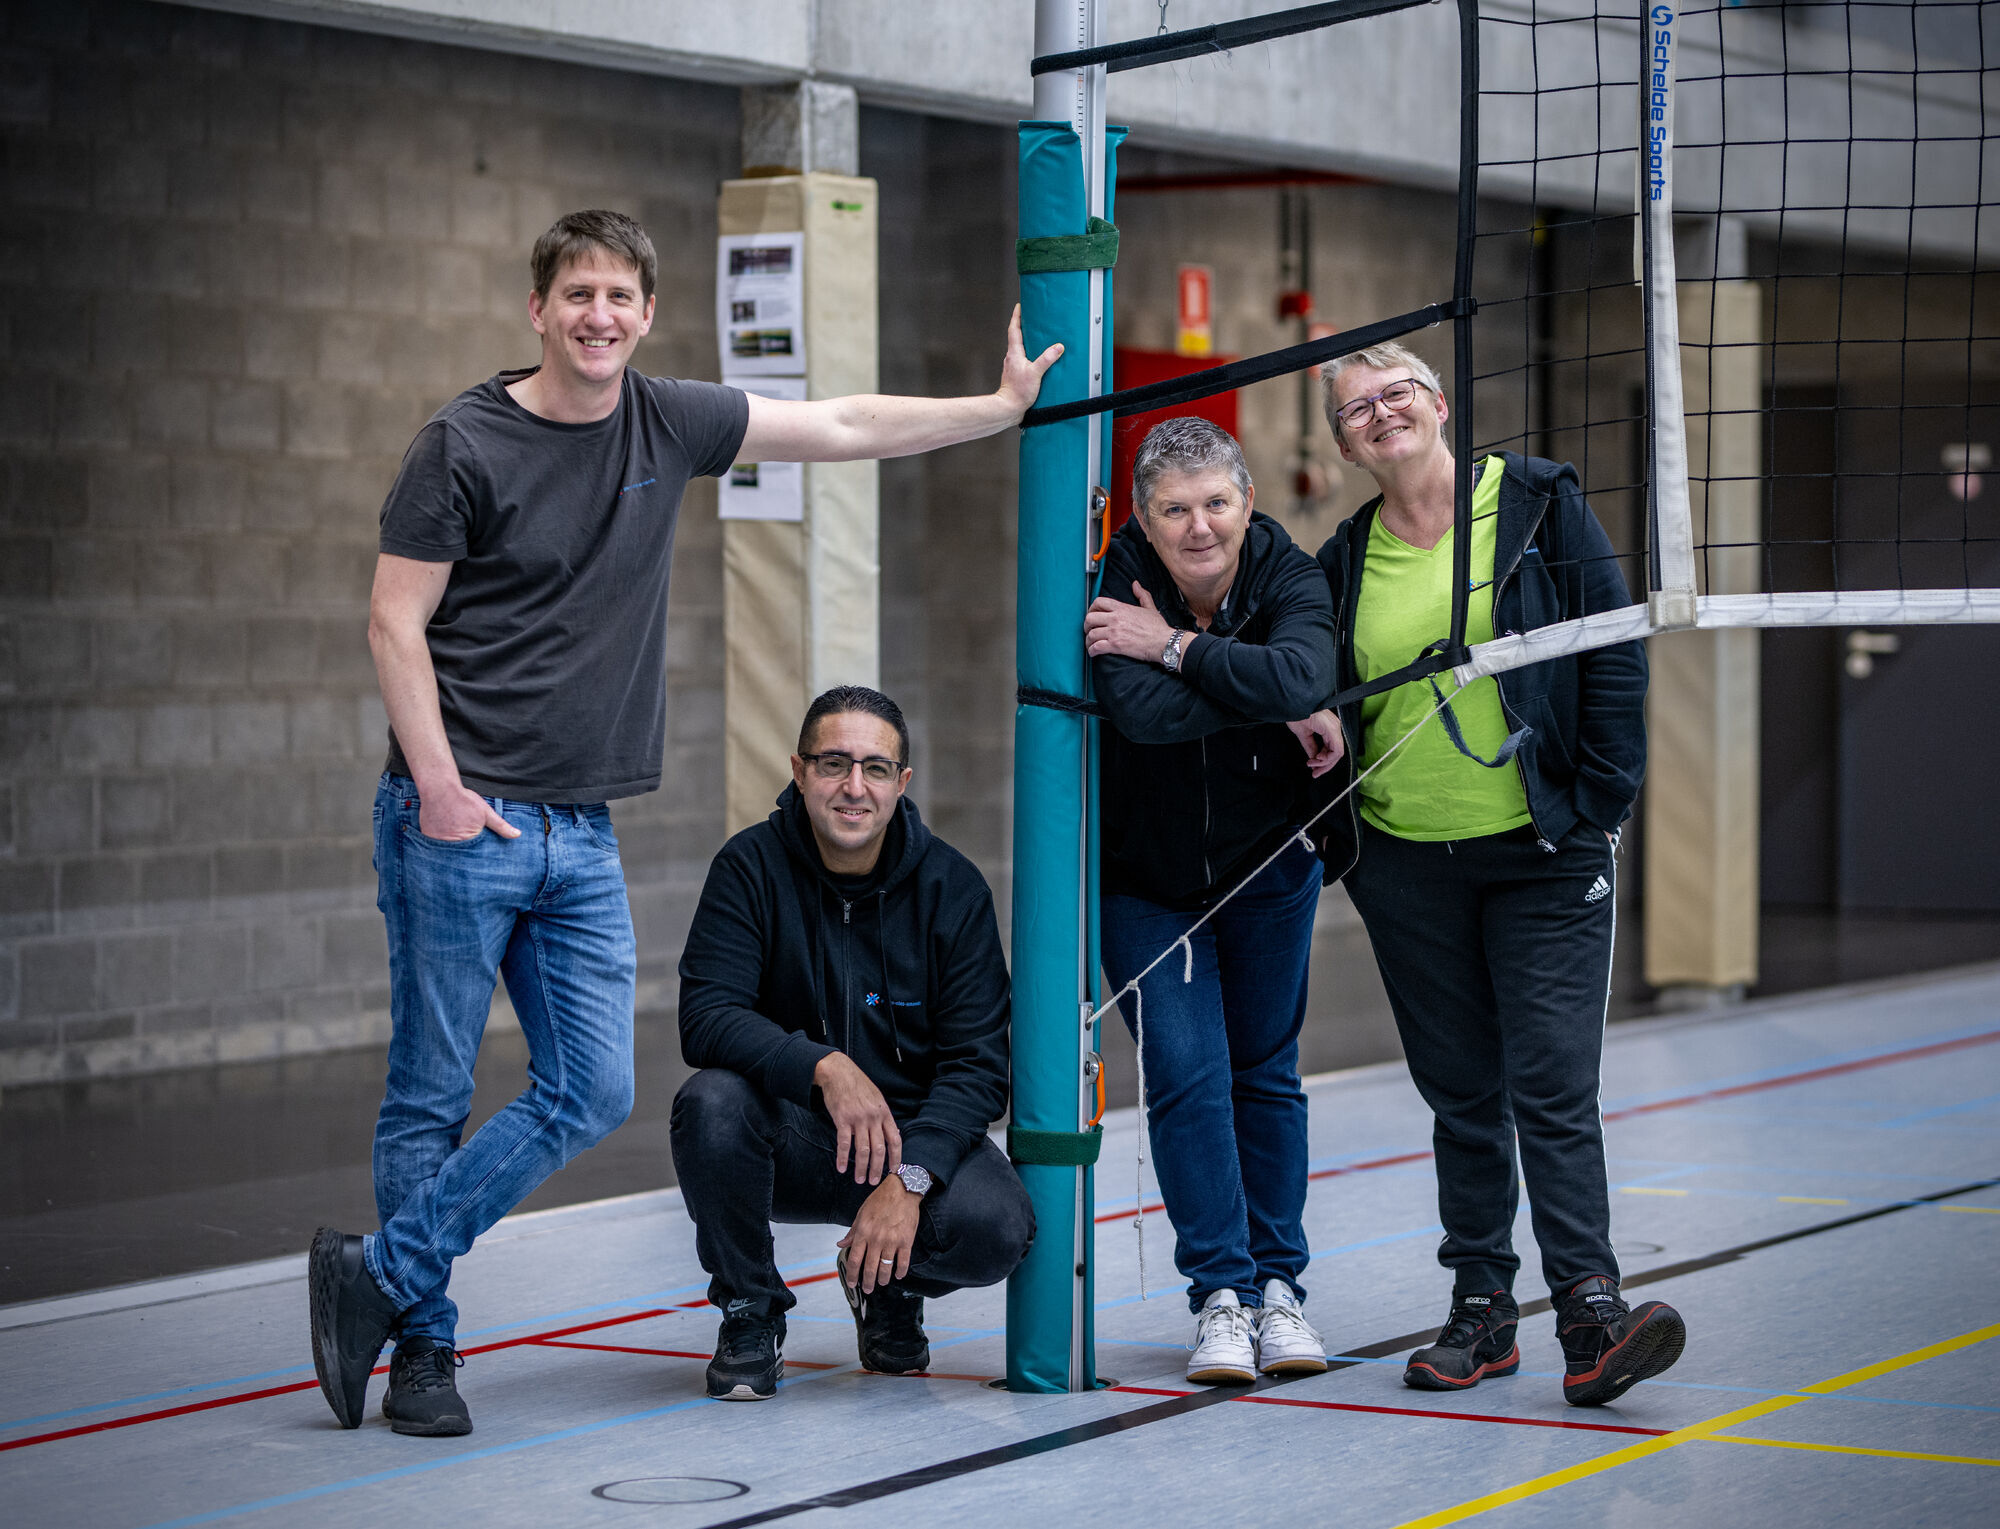 Vier zaalwachters van gemeente Puurs-Sint-Amands poseren in de sporthal